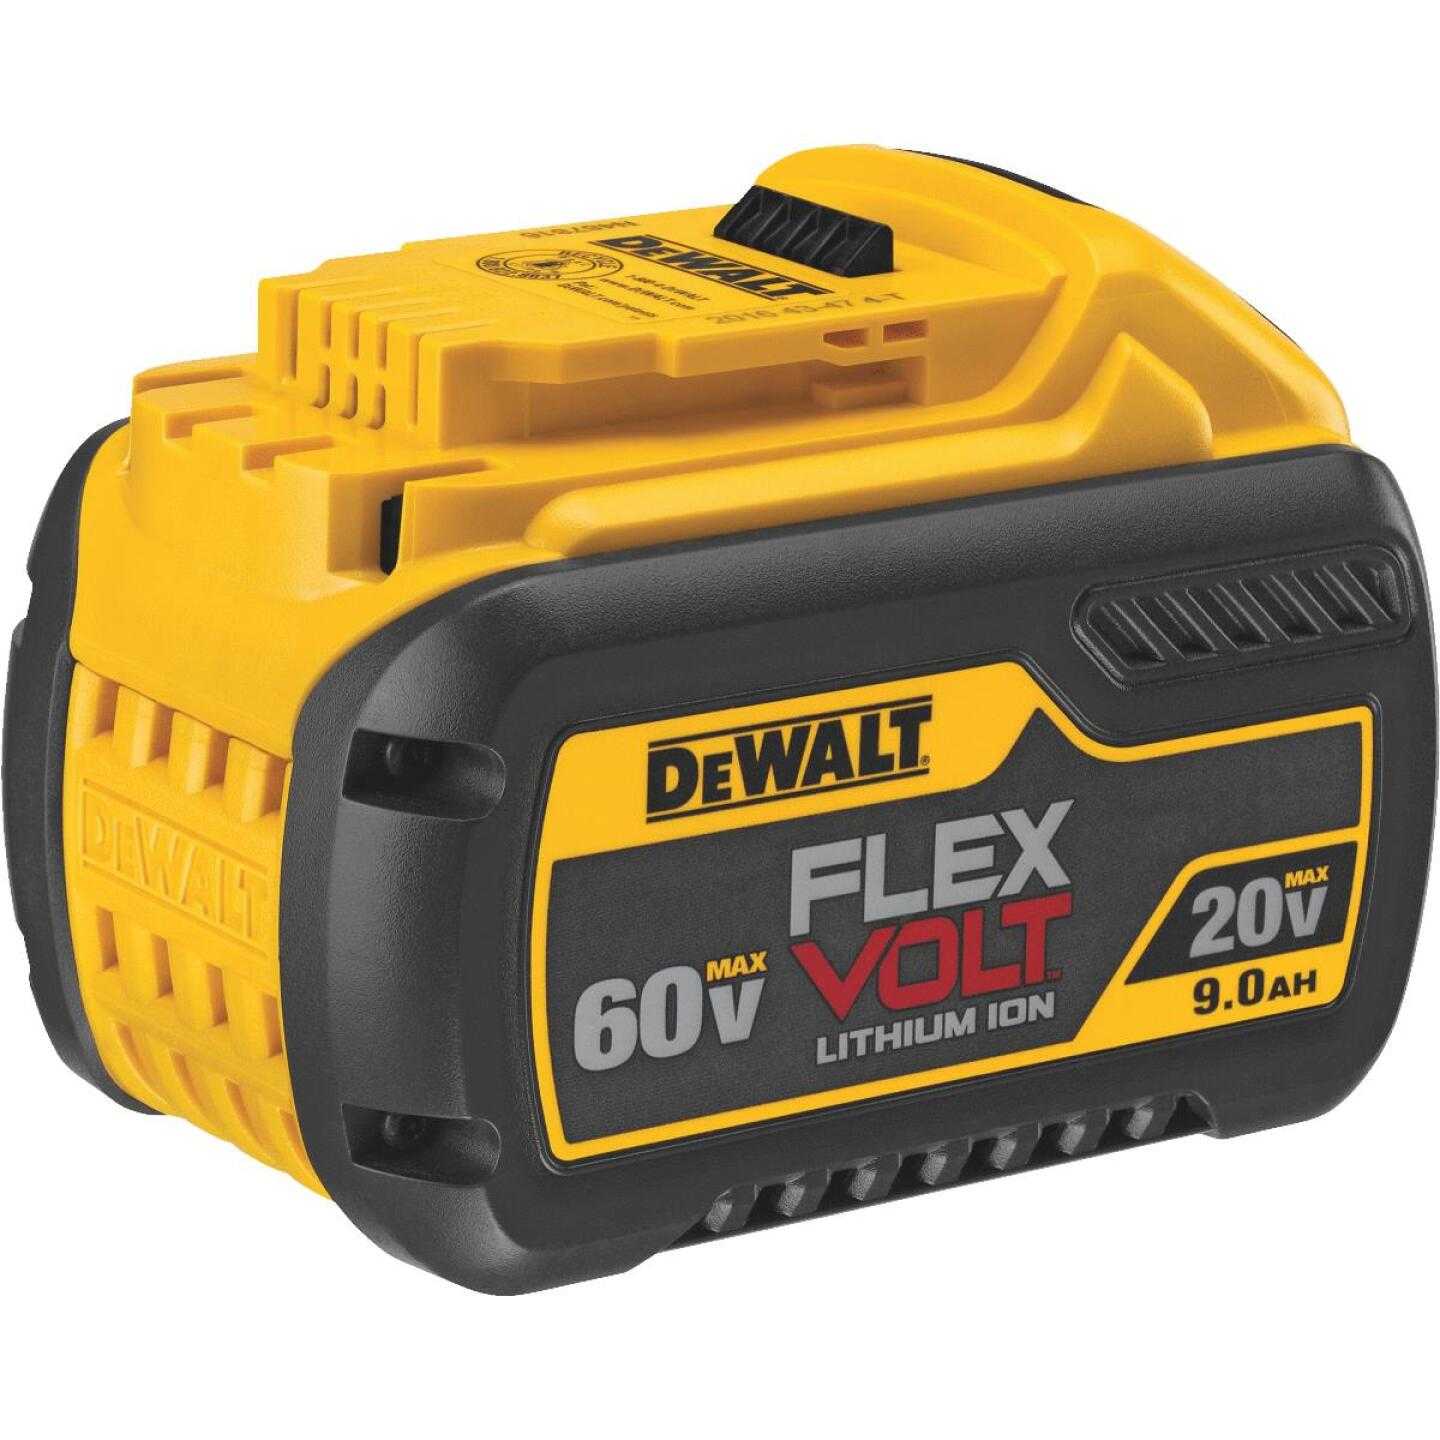 Dewalt, DeWalt Flexvolt 20 Volt and 60 Volt MAX Lithium-Ion 9.0 Ah Tool Battery